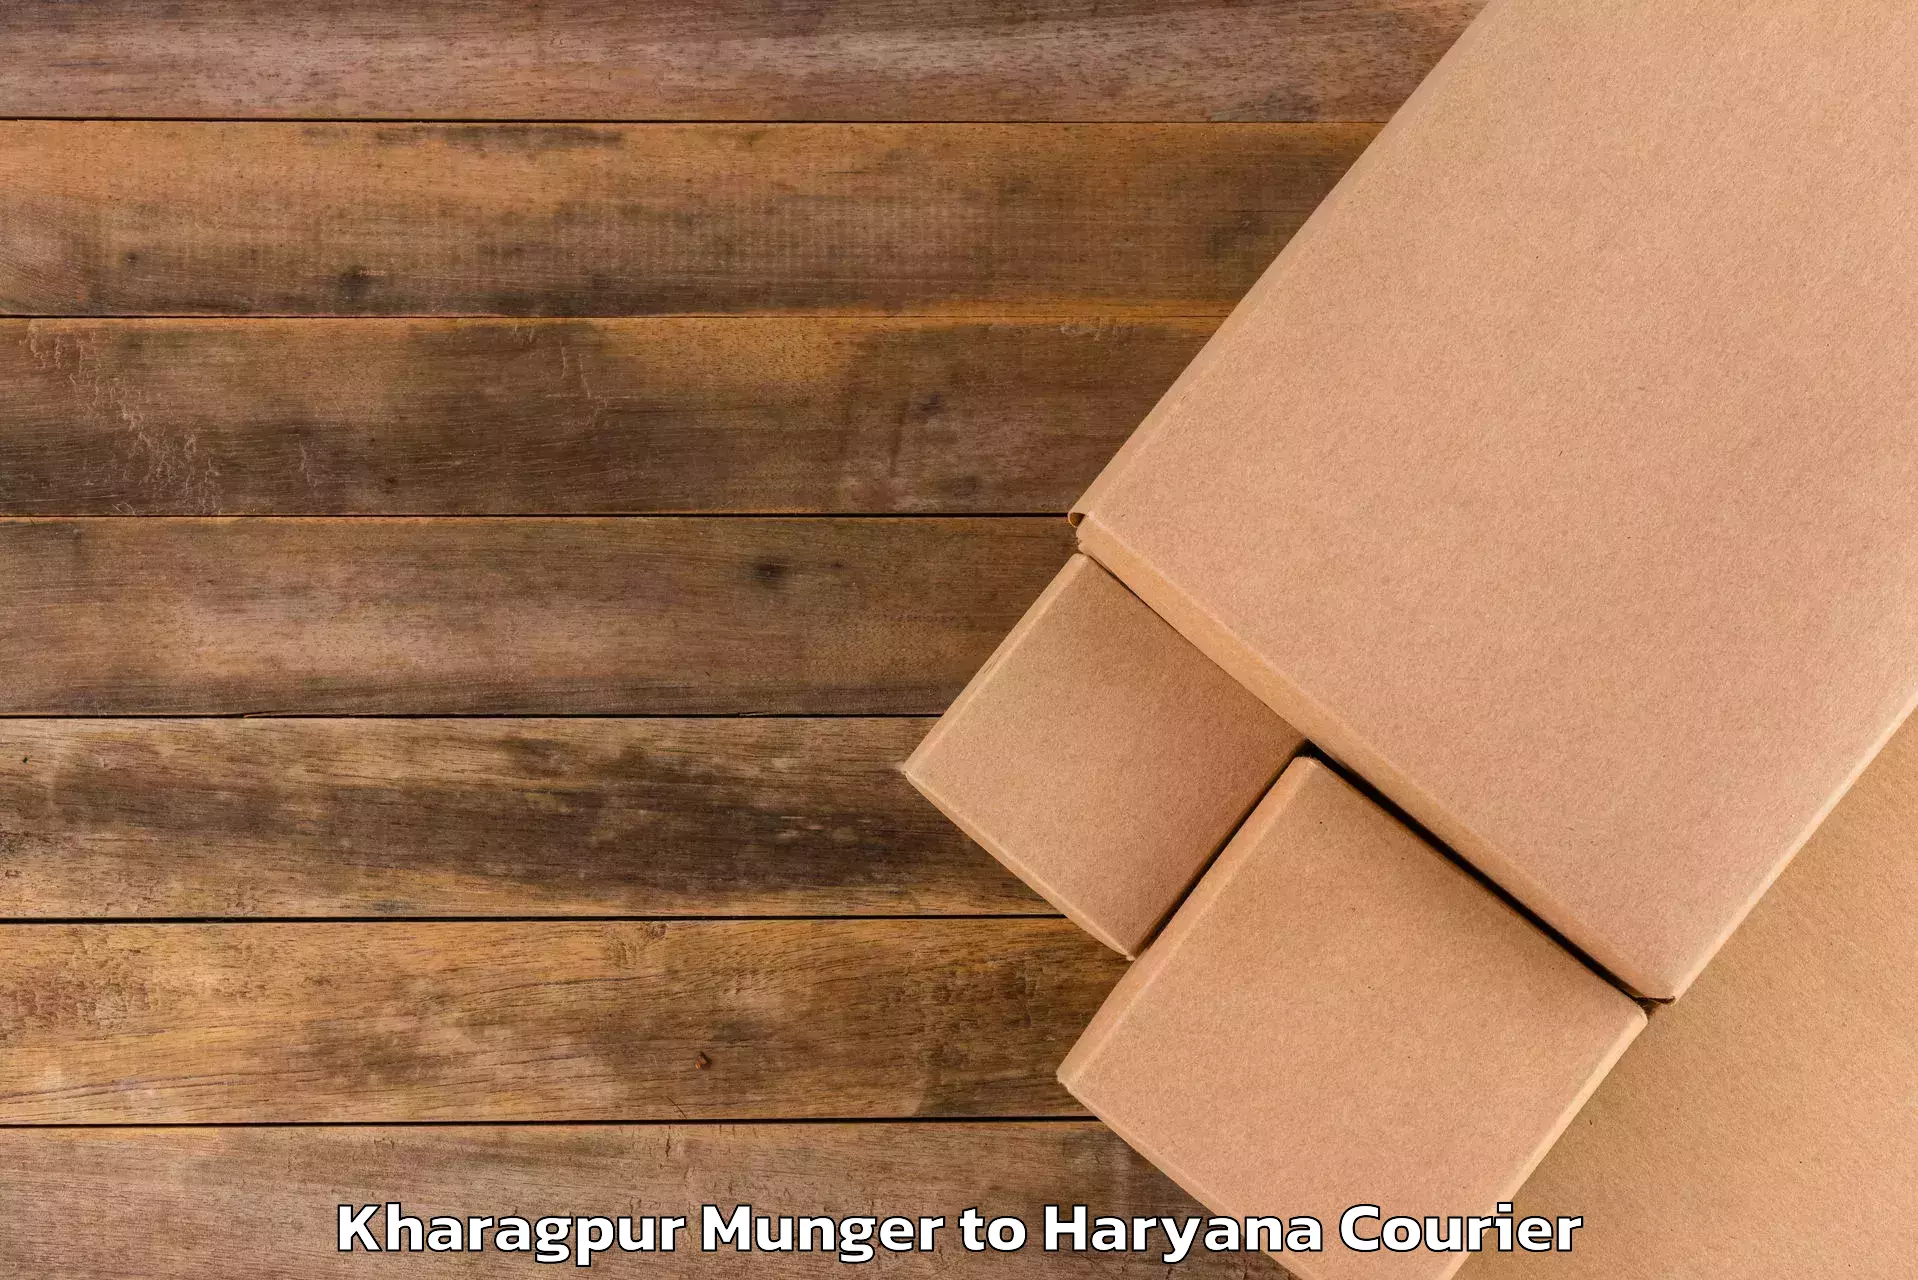 Rural baggage transport Kharagpur Munger to Bilaspur Haryana